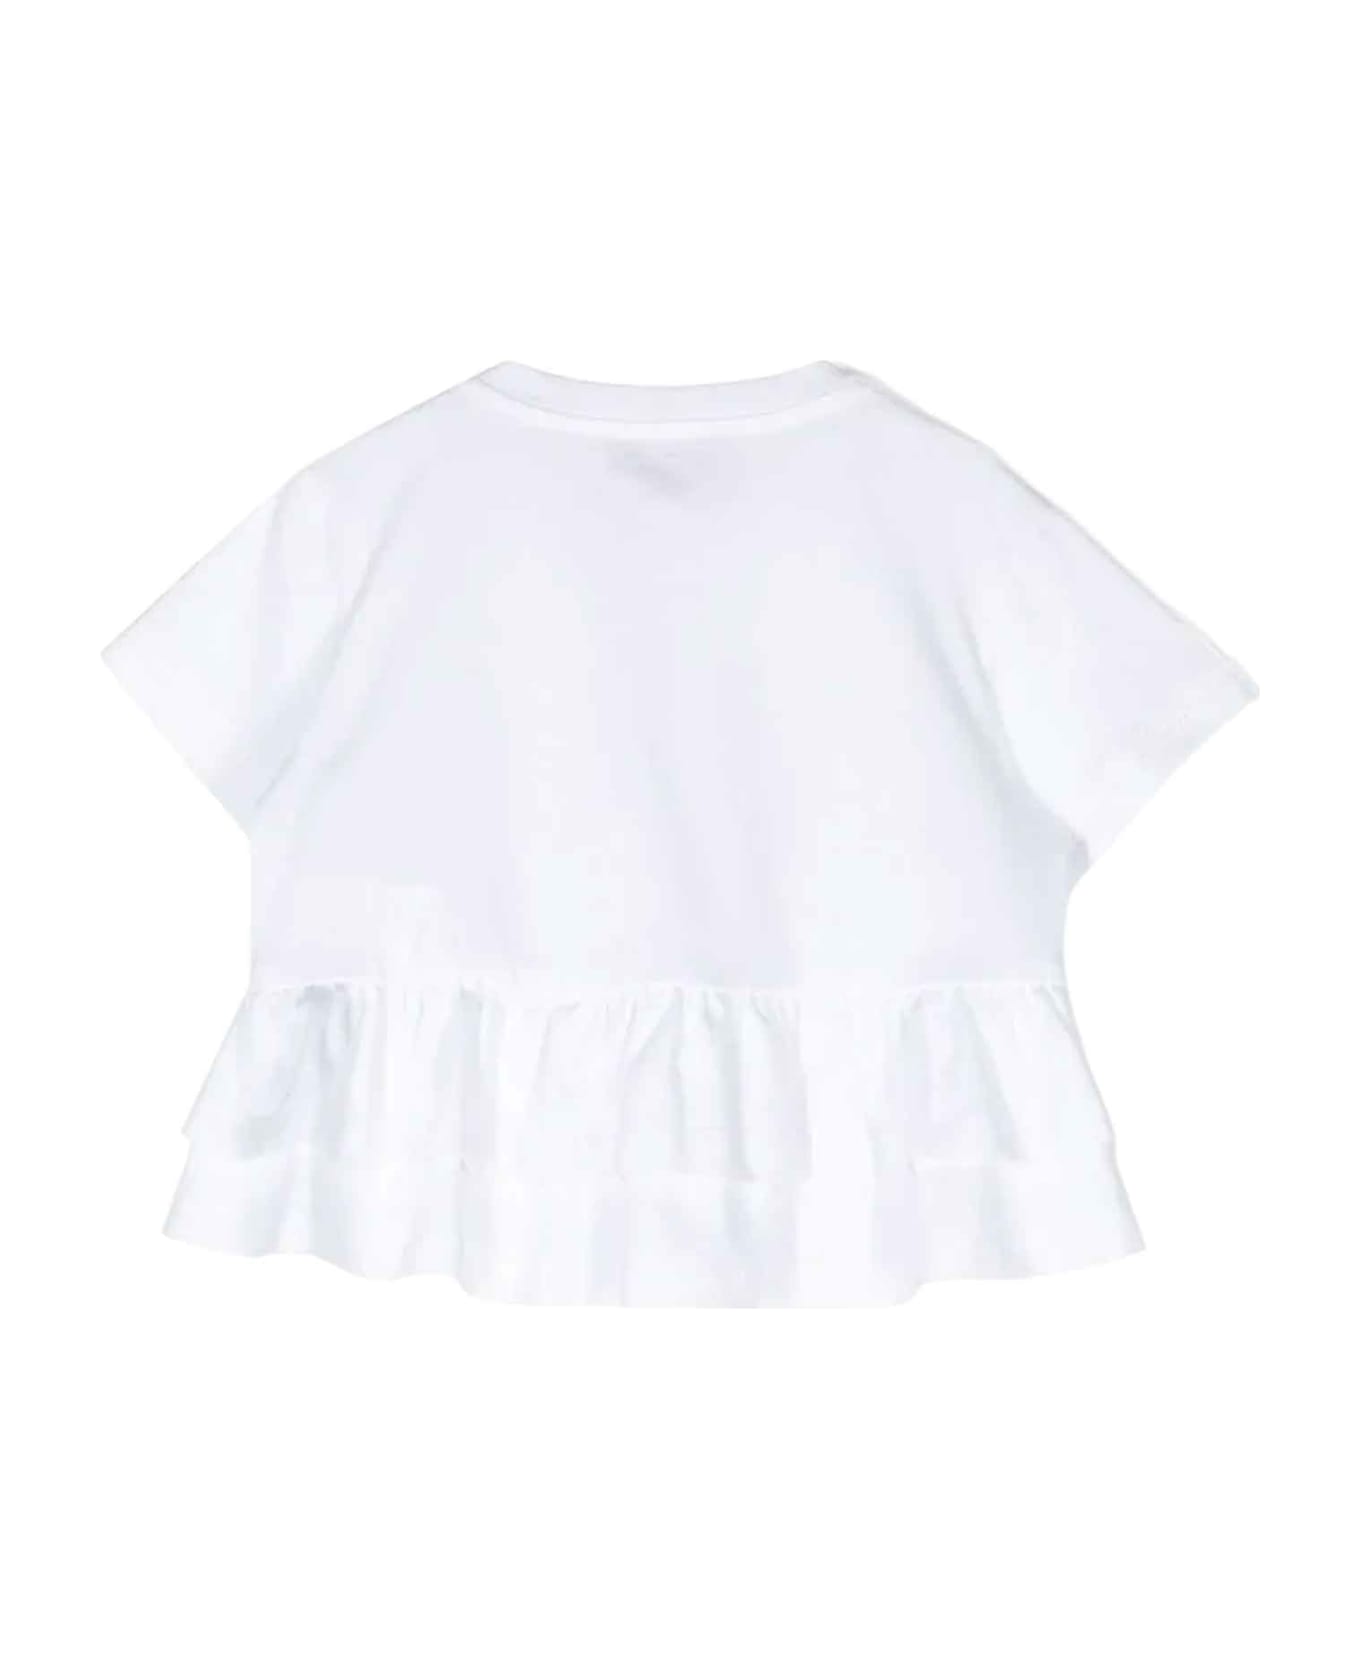 Missoni Kids White T-shirt Girl - WHITE